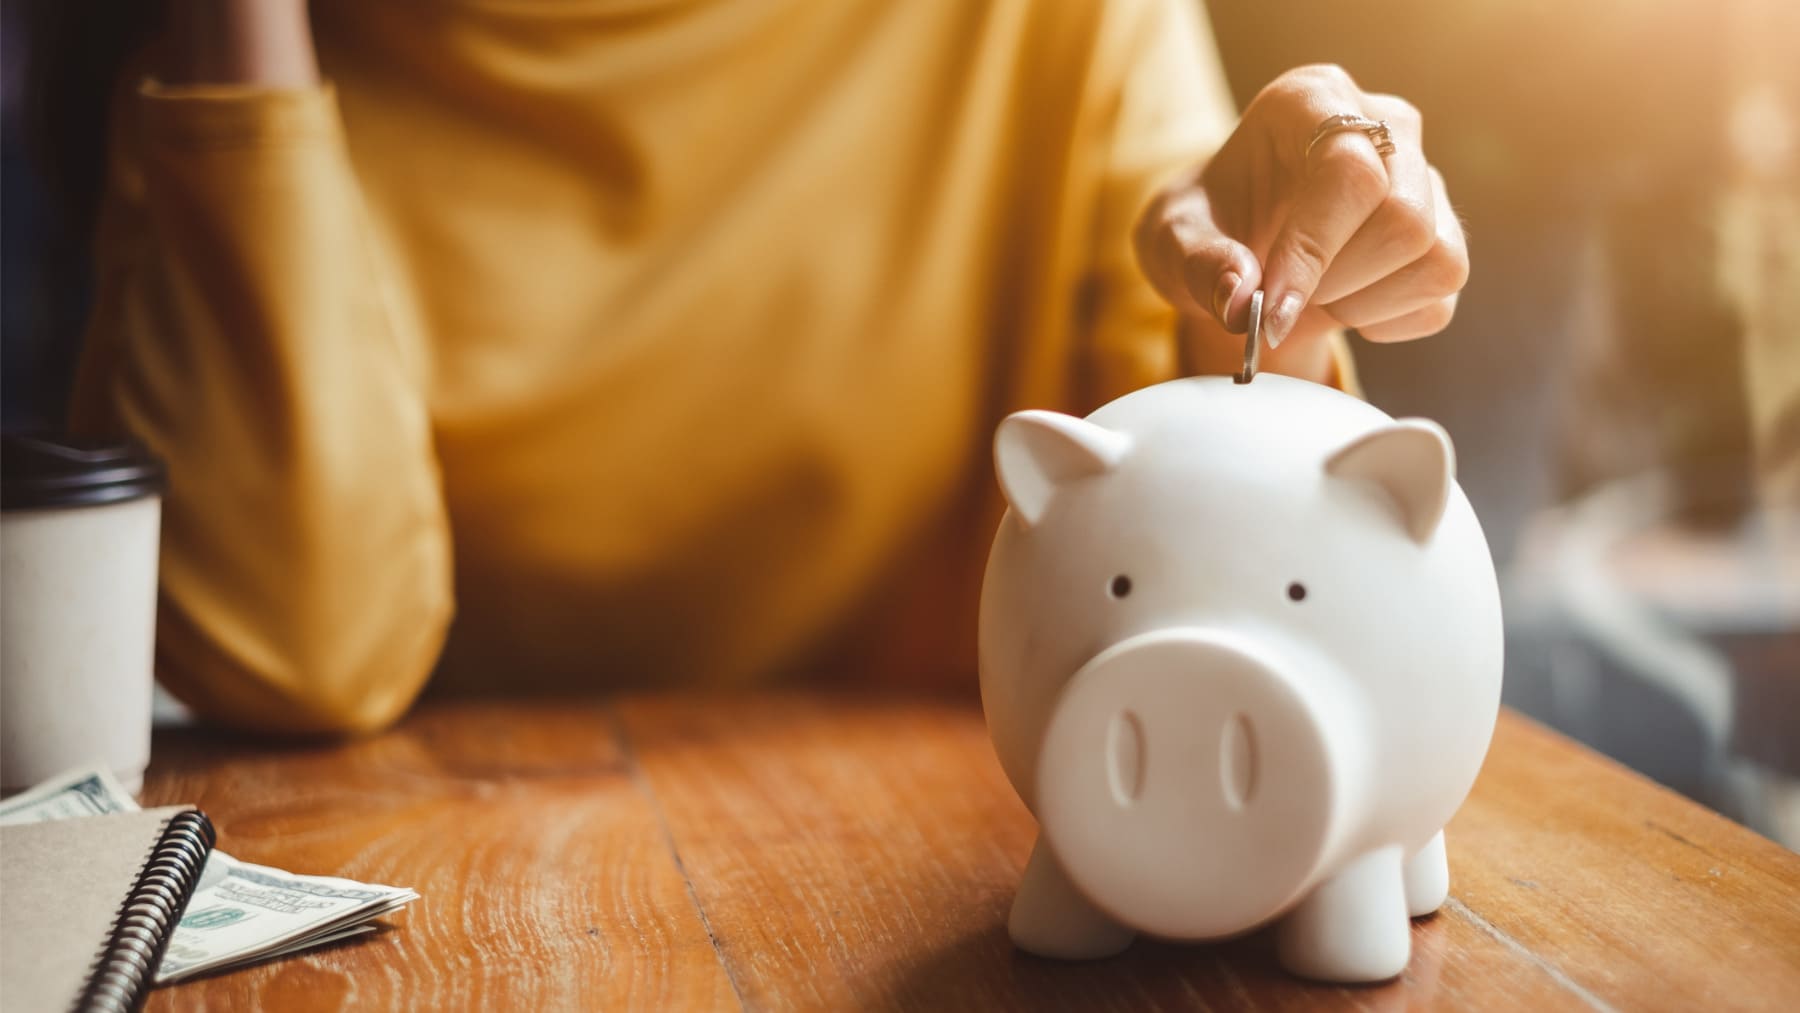 Cómo ahorrar poco a poco, El método de los 30 días para ahorrar 465 euros  al mes